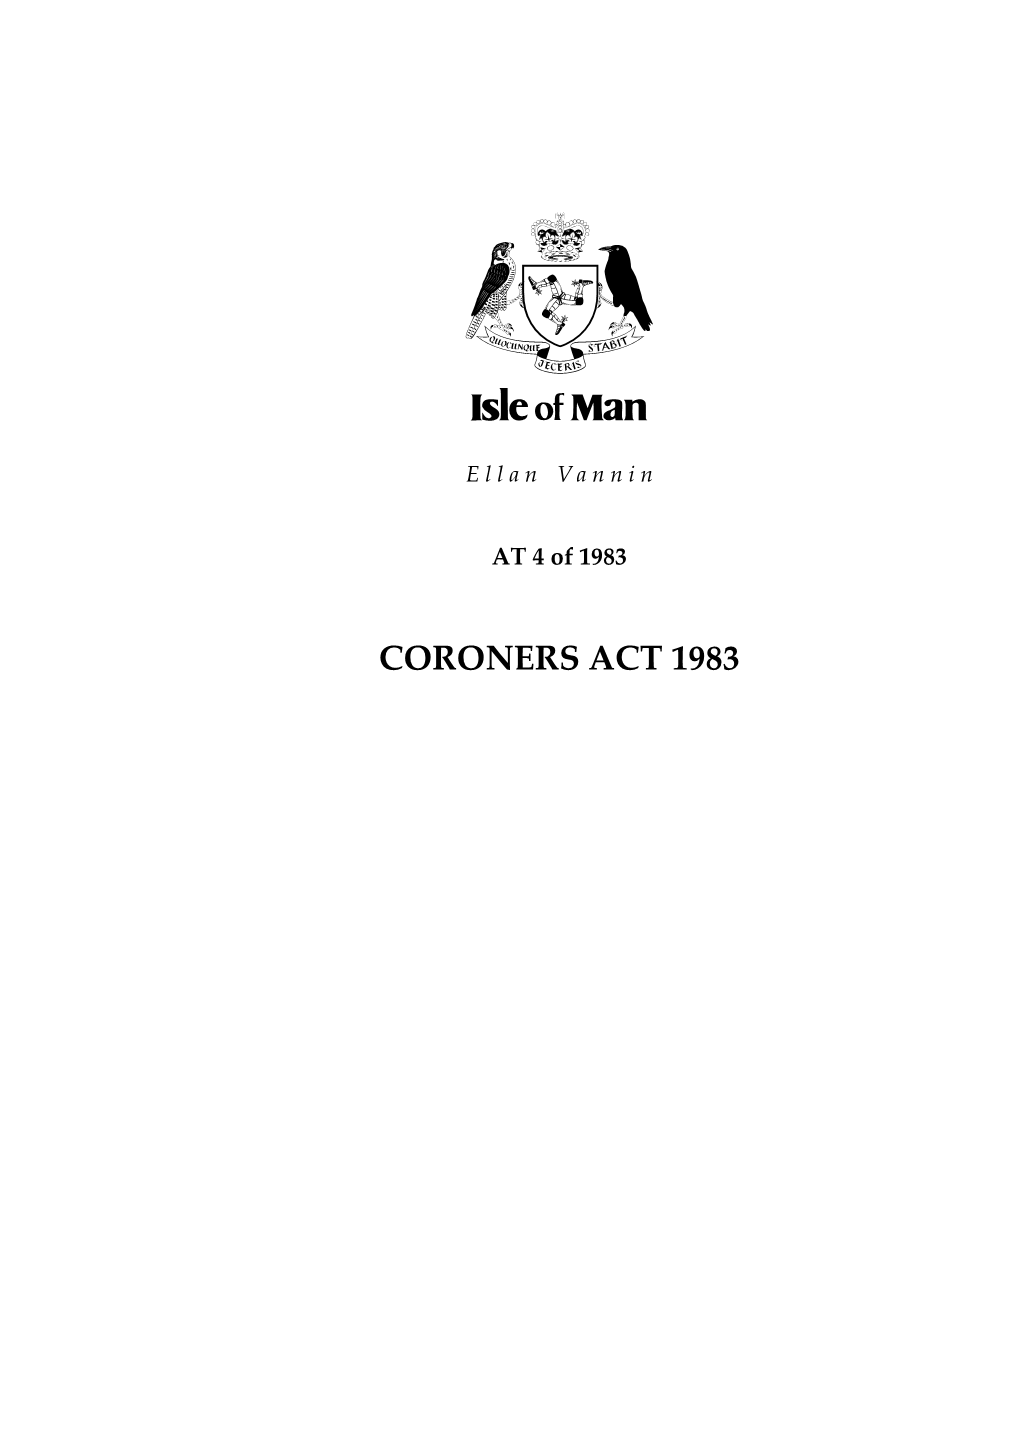 Coroners Act 1983